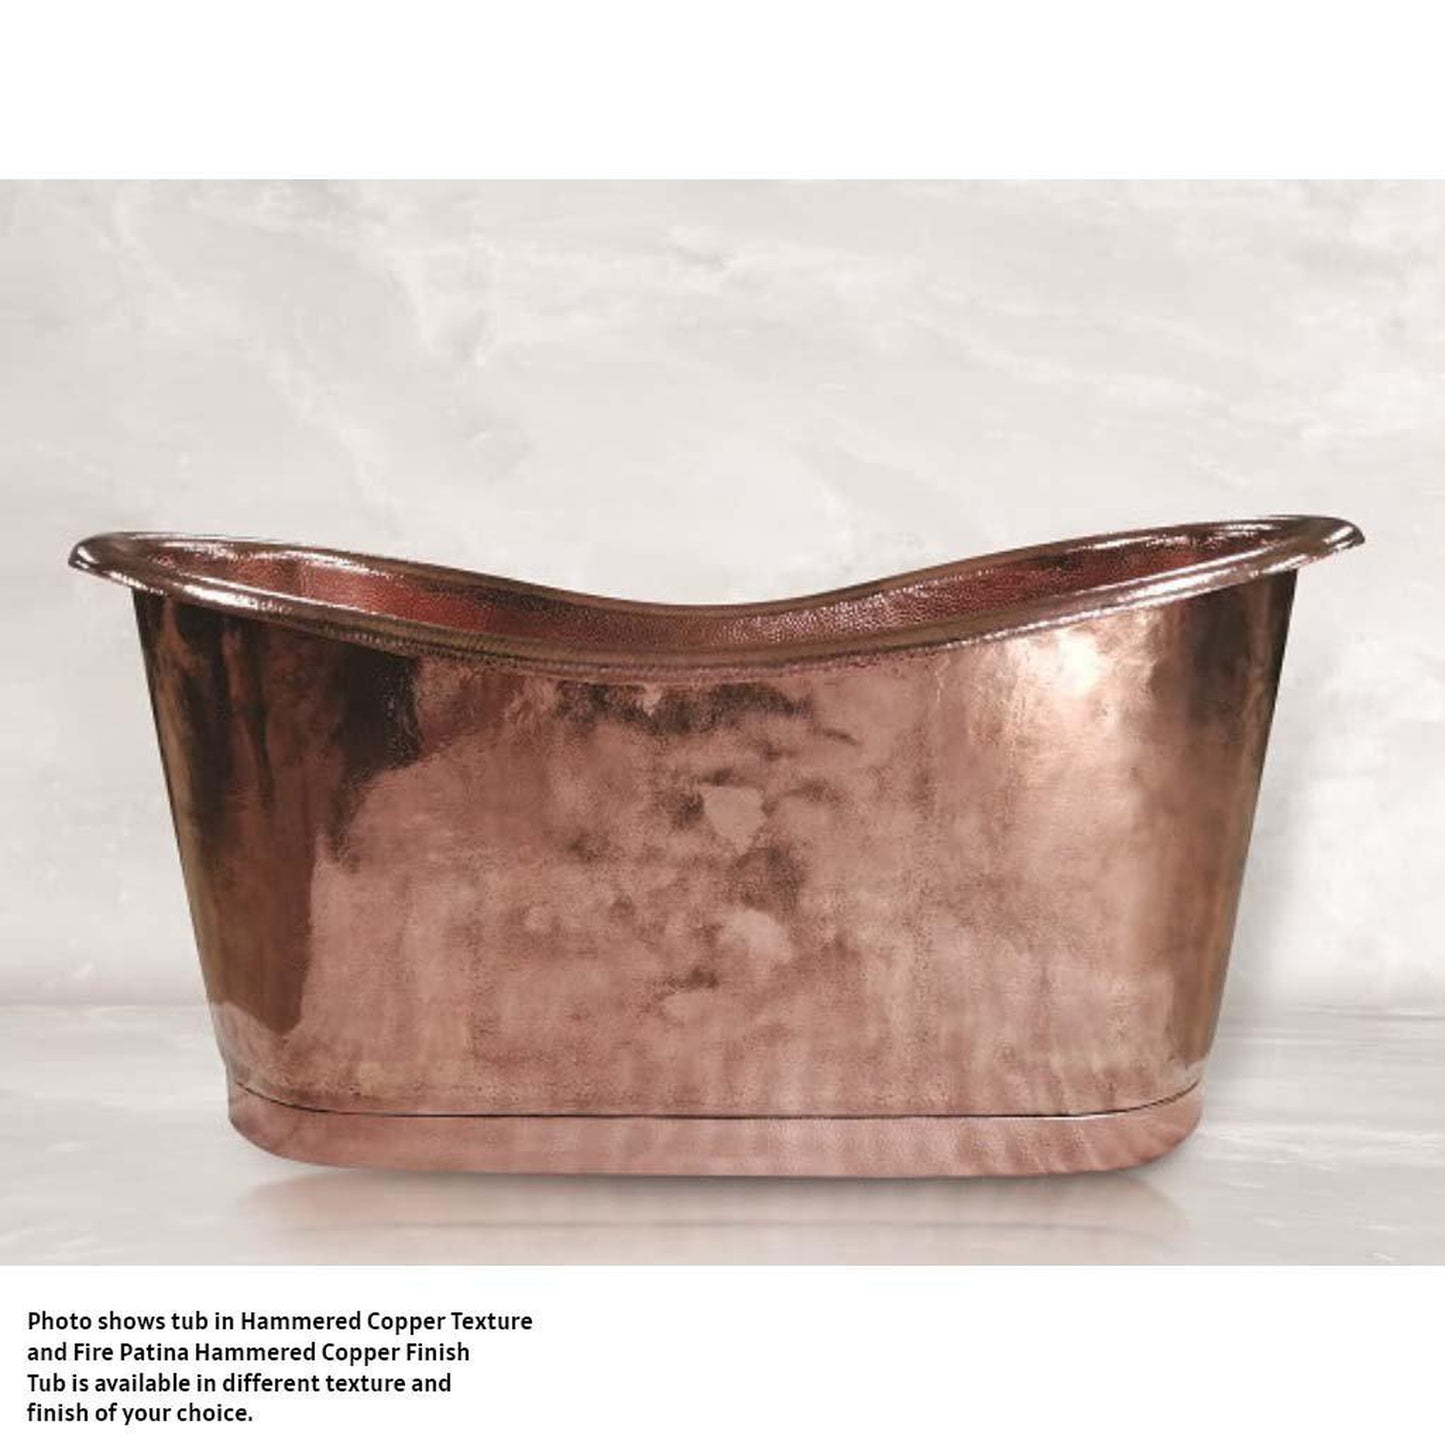 Amoretti Brothers Regina 70" Freestanding Soaking Copper Tub in Copper Finish